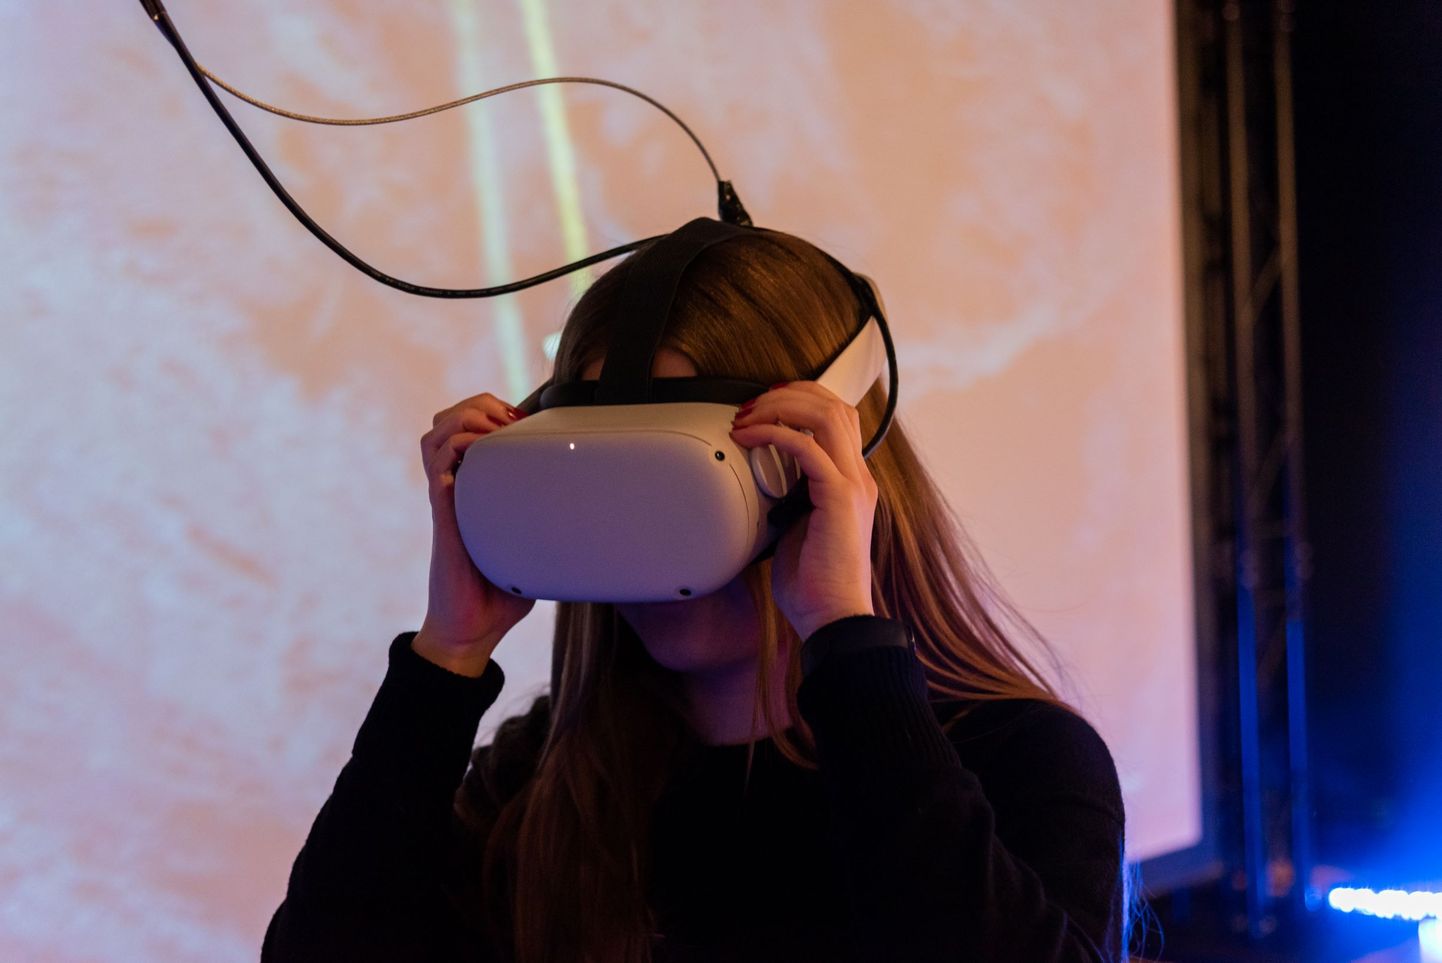 VR-prillidega lumisest nõlvast alla kihutamine on ühteaegu lõbus nii 5- kui ka 50-aastasele.